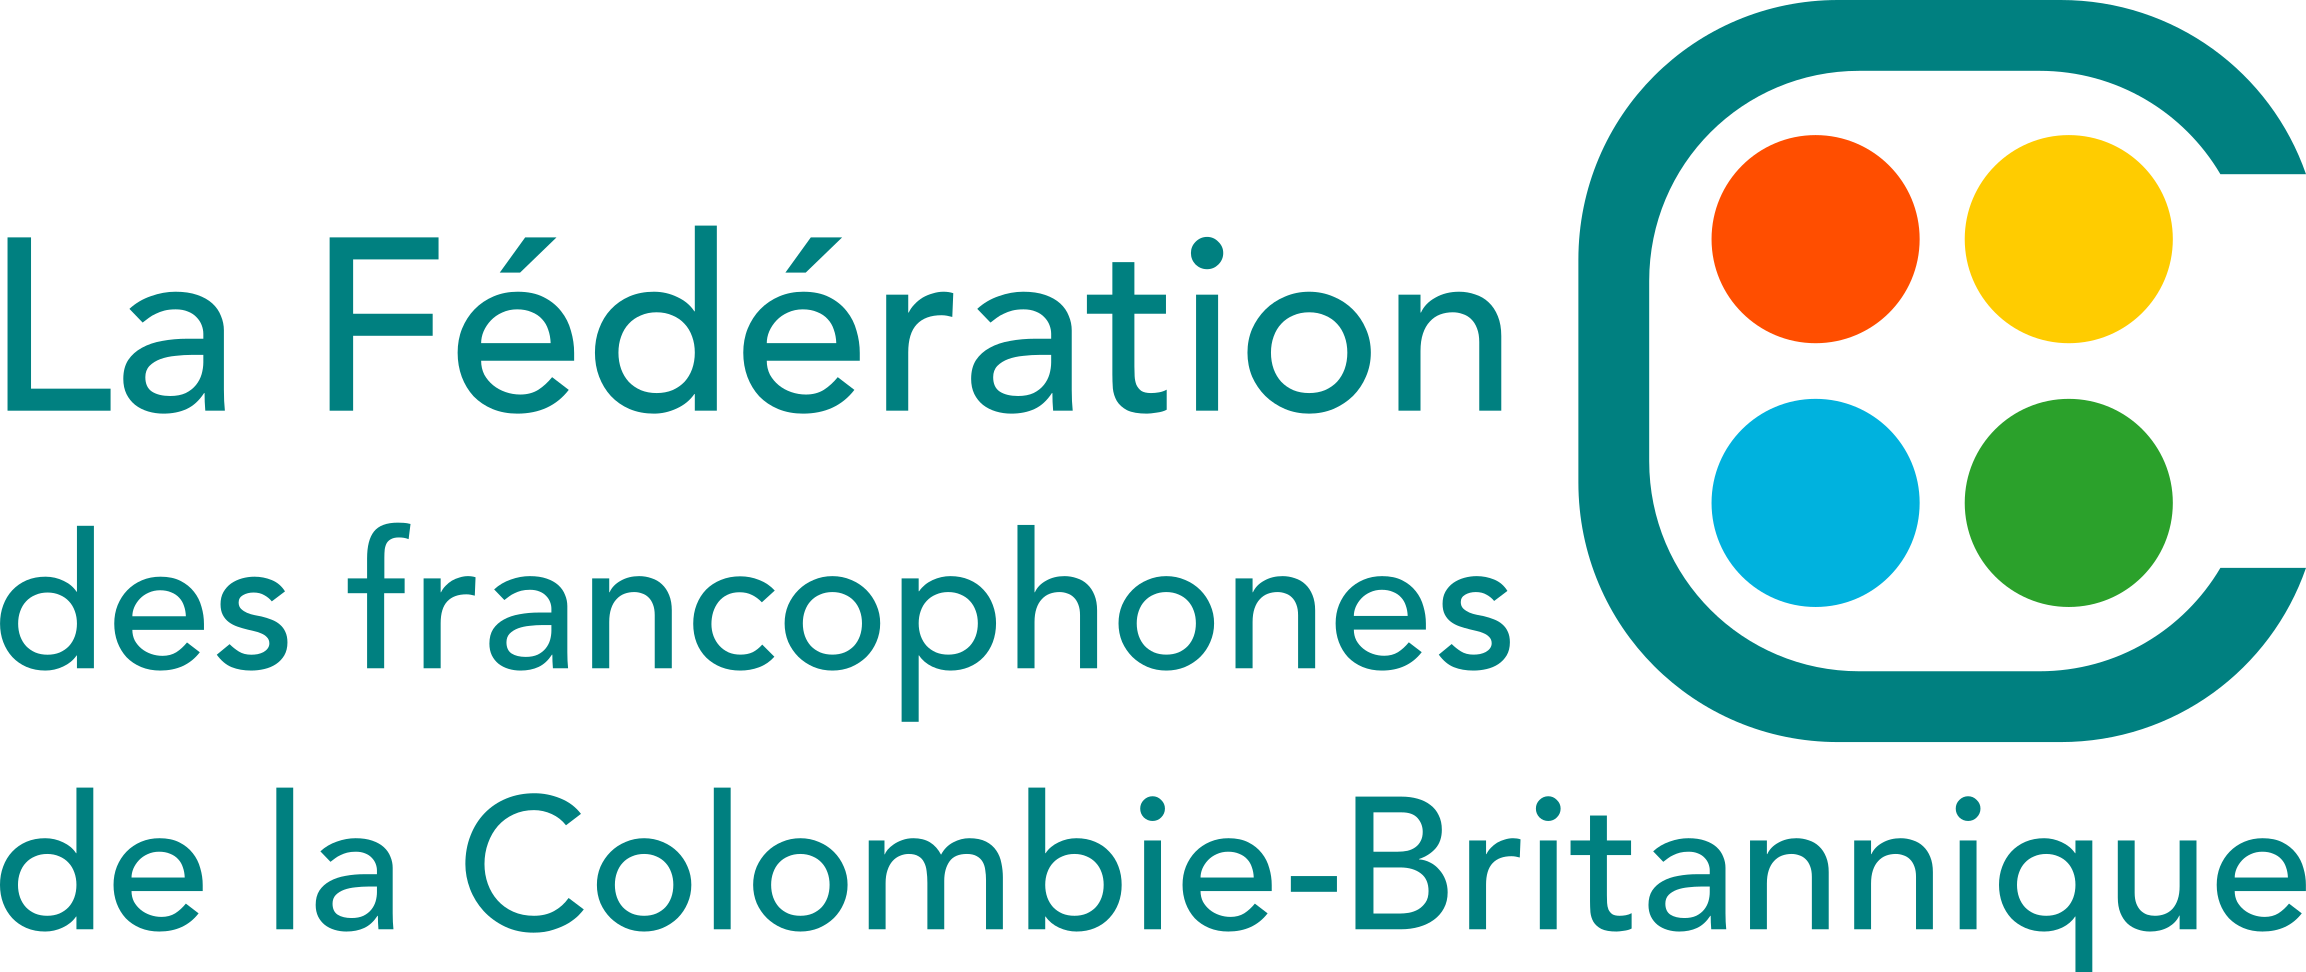 La Fédération des francophones de Colombie-Britannique